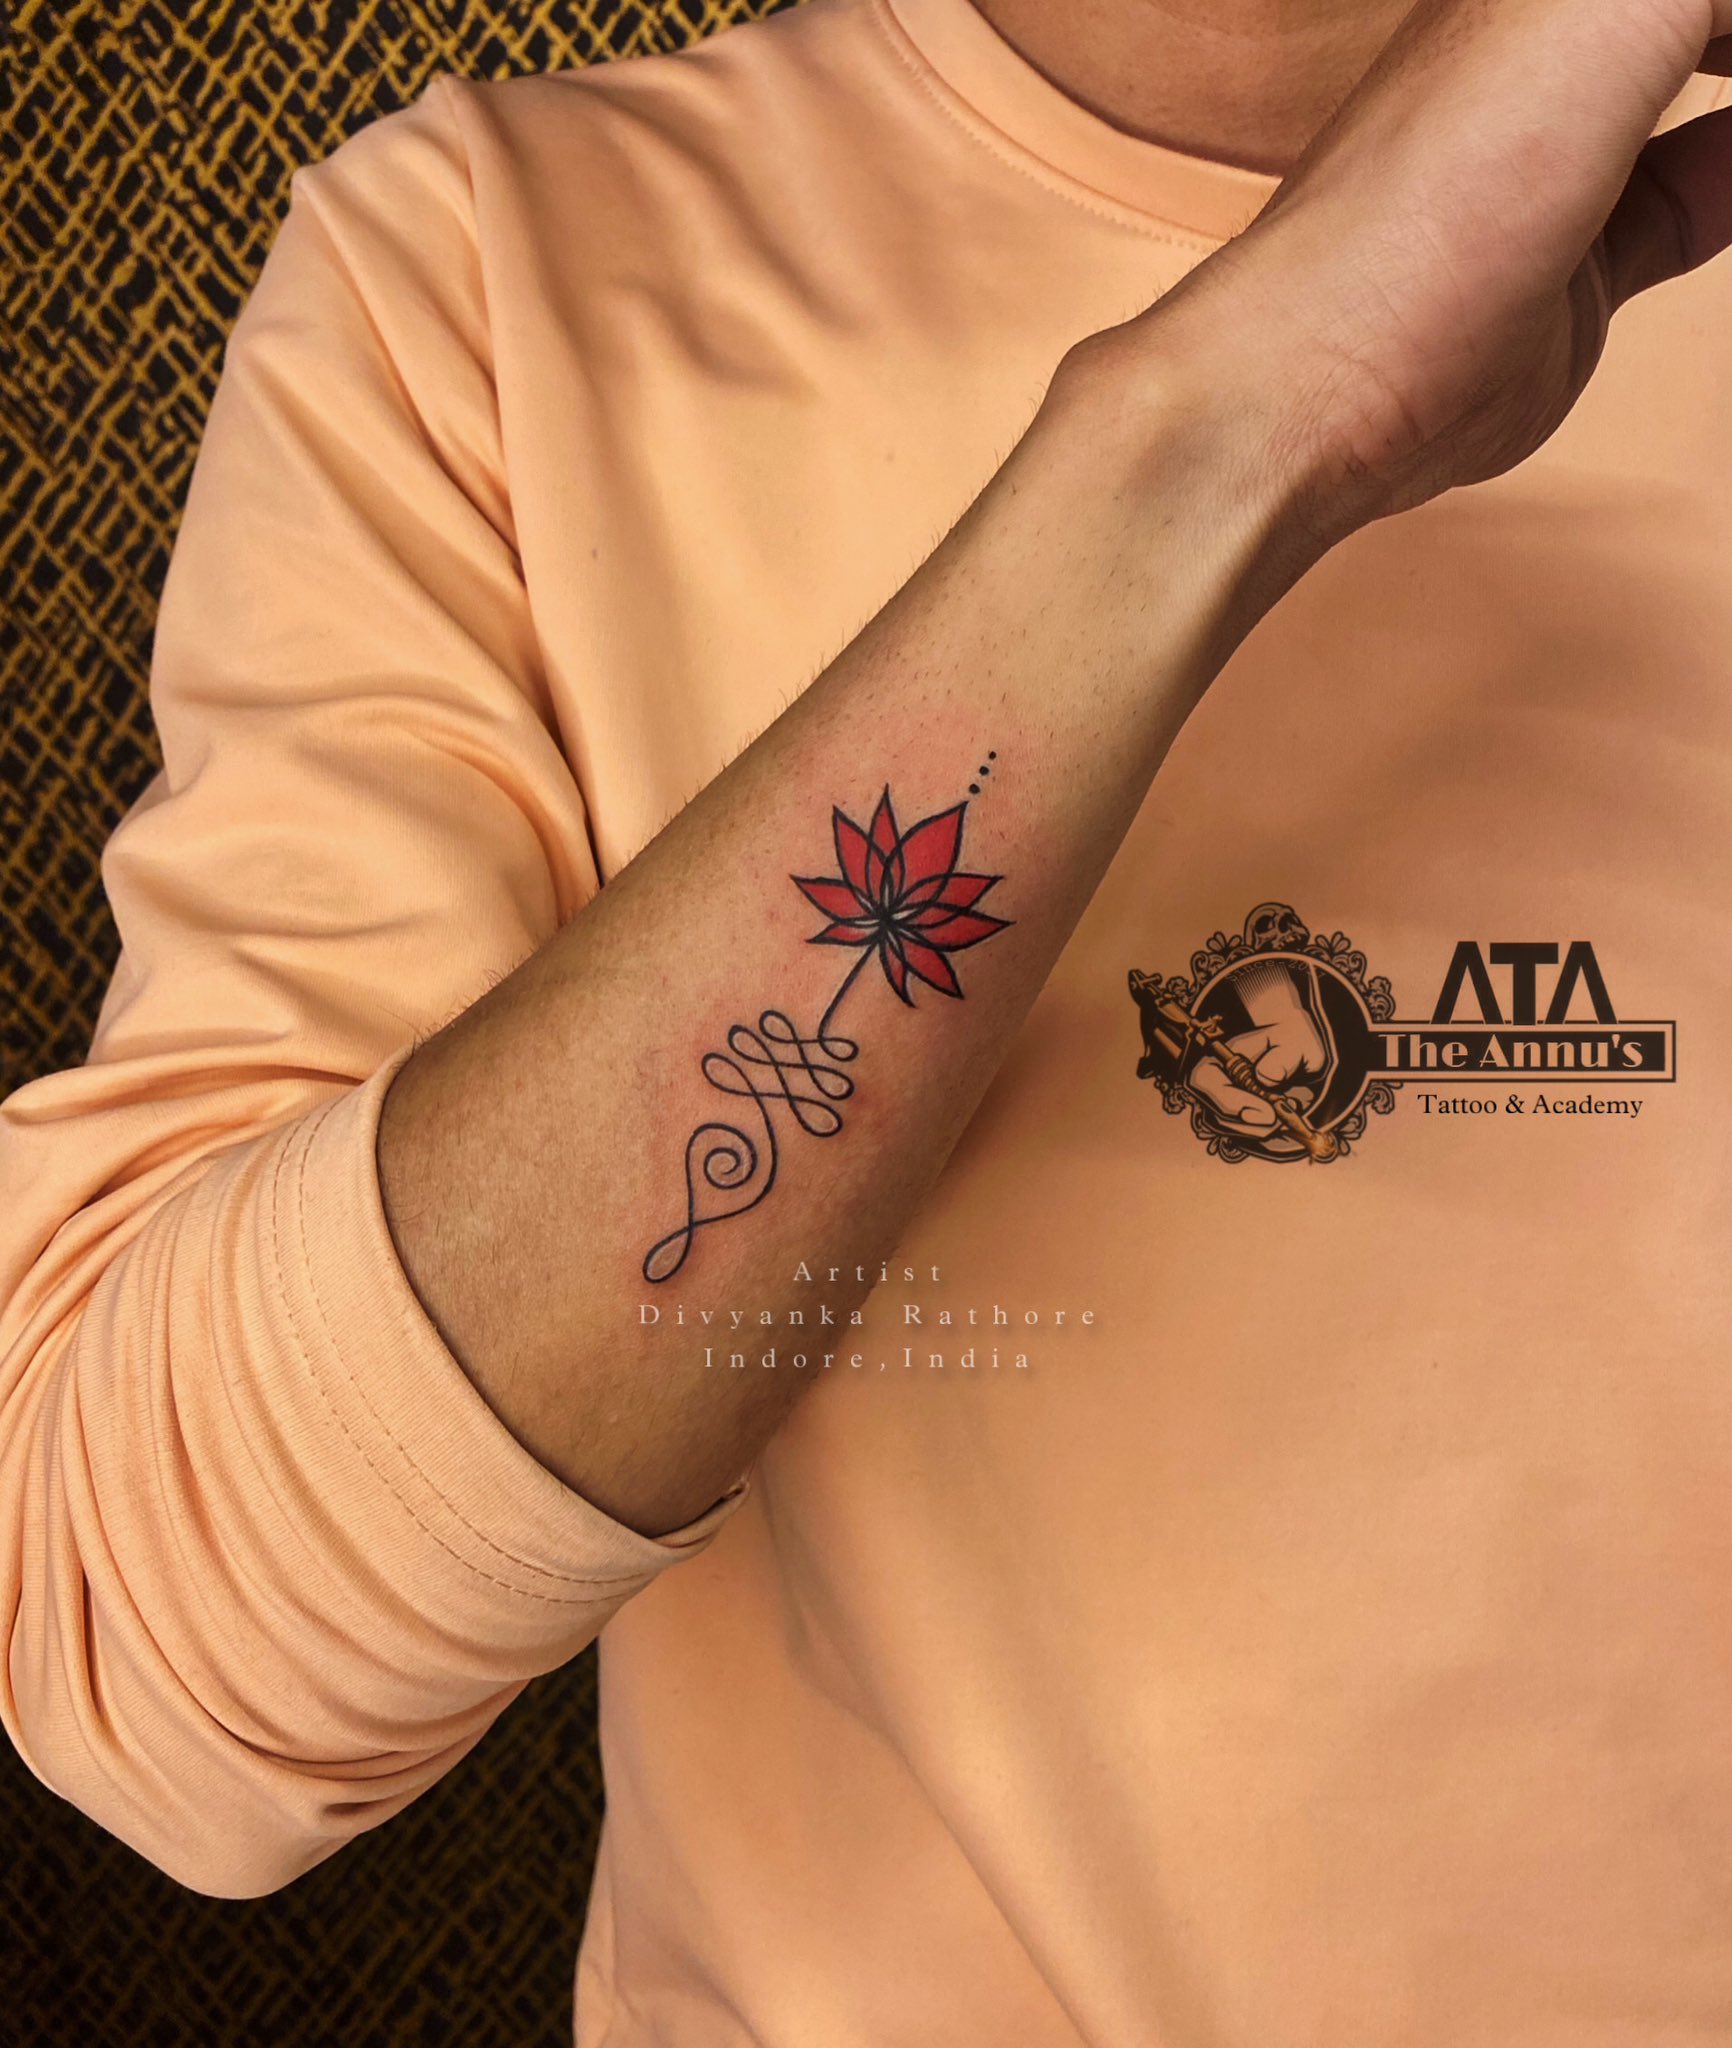 Nikku ko tattoo Karwana Kyu Pda Mehnga ? | Vlog 2 | F.t Arun rathore |  Rathore 2.0 - YouTube